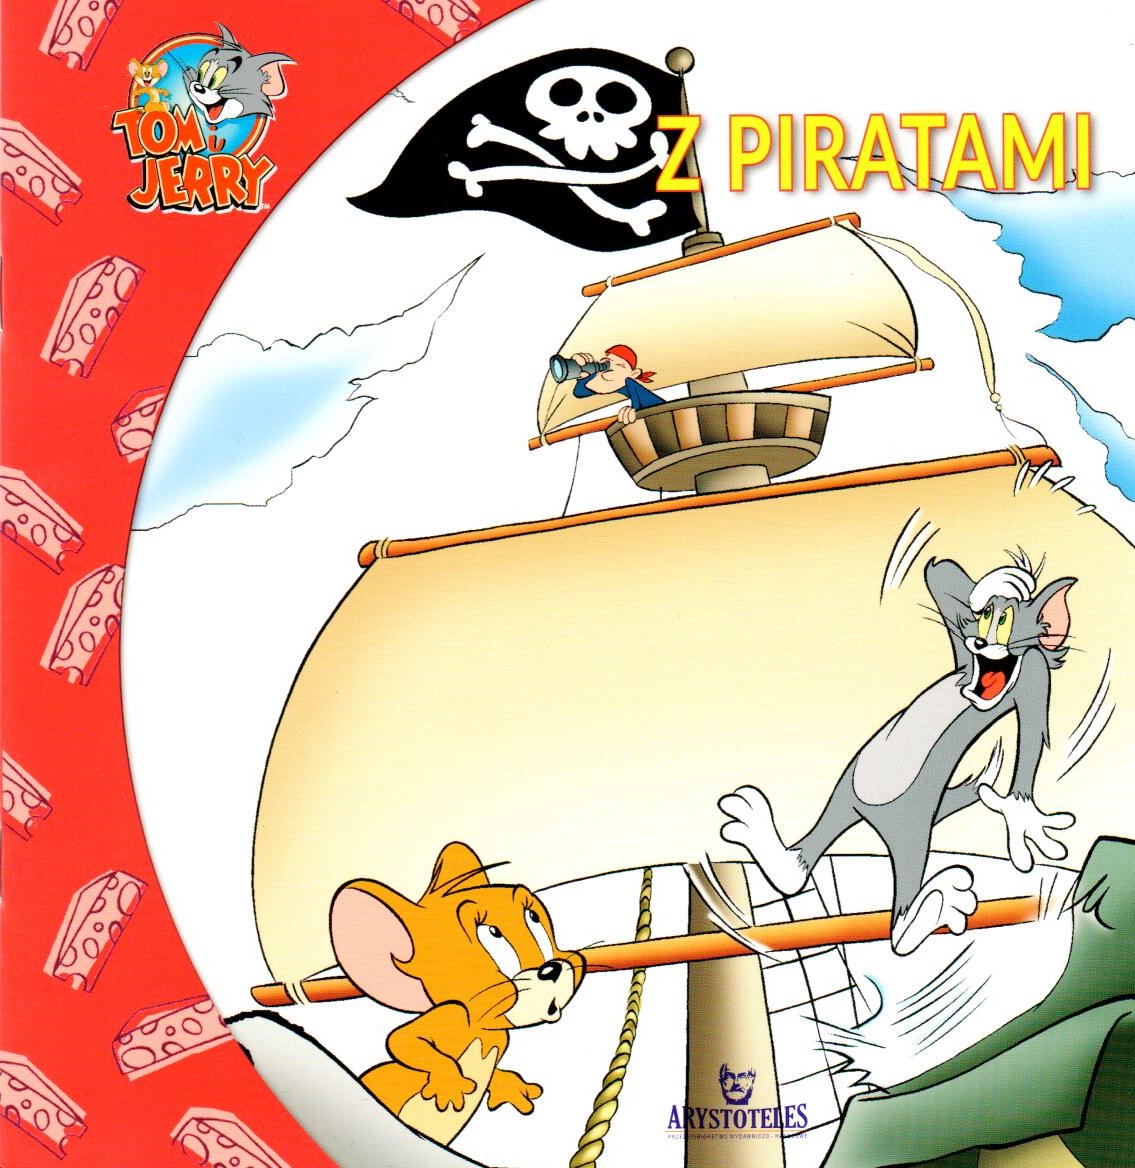 Okładka rysunkowa. Przestraszony kot i zdziwiona mała myszka patrzą na pirata siedzącego w bocianim gnieździe na maszcie.